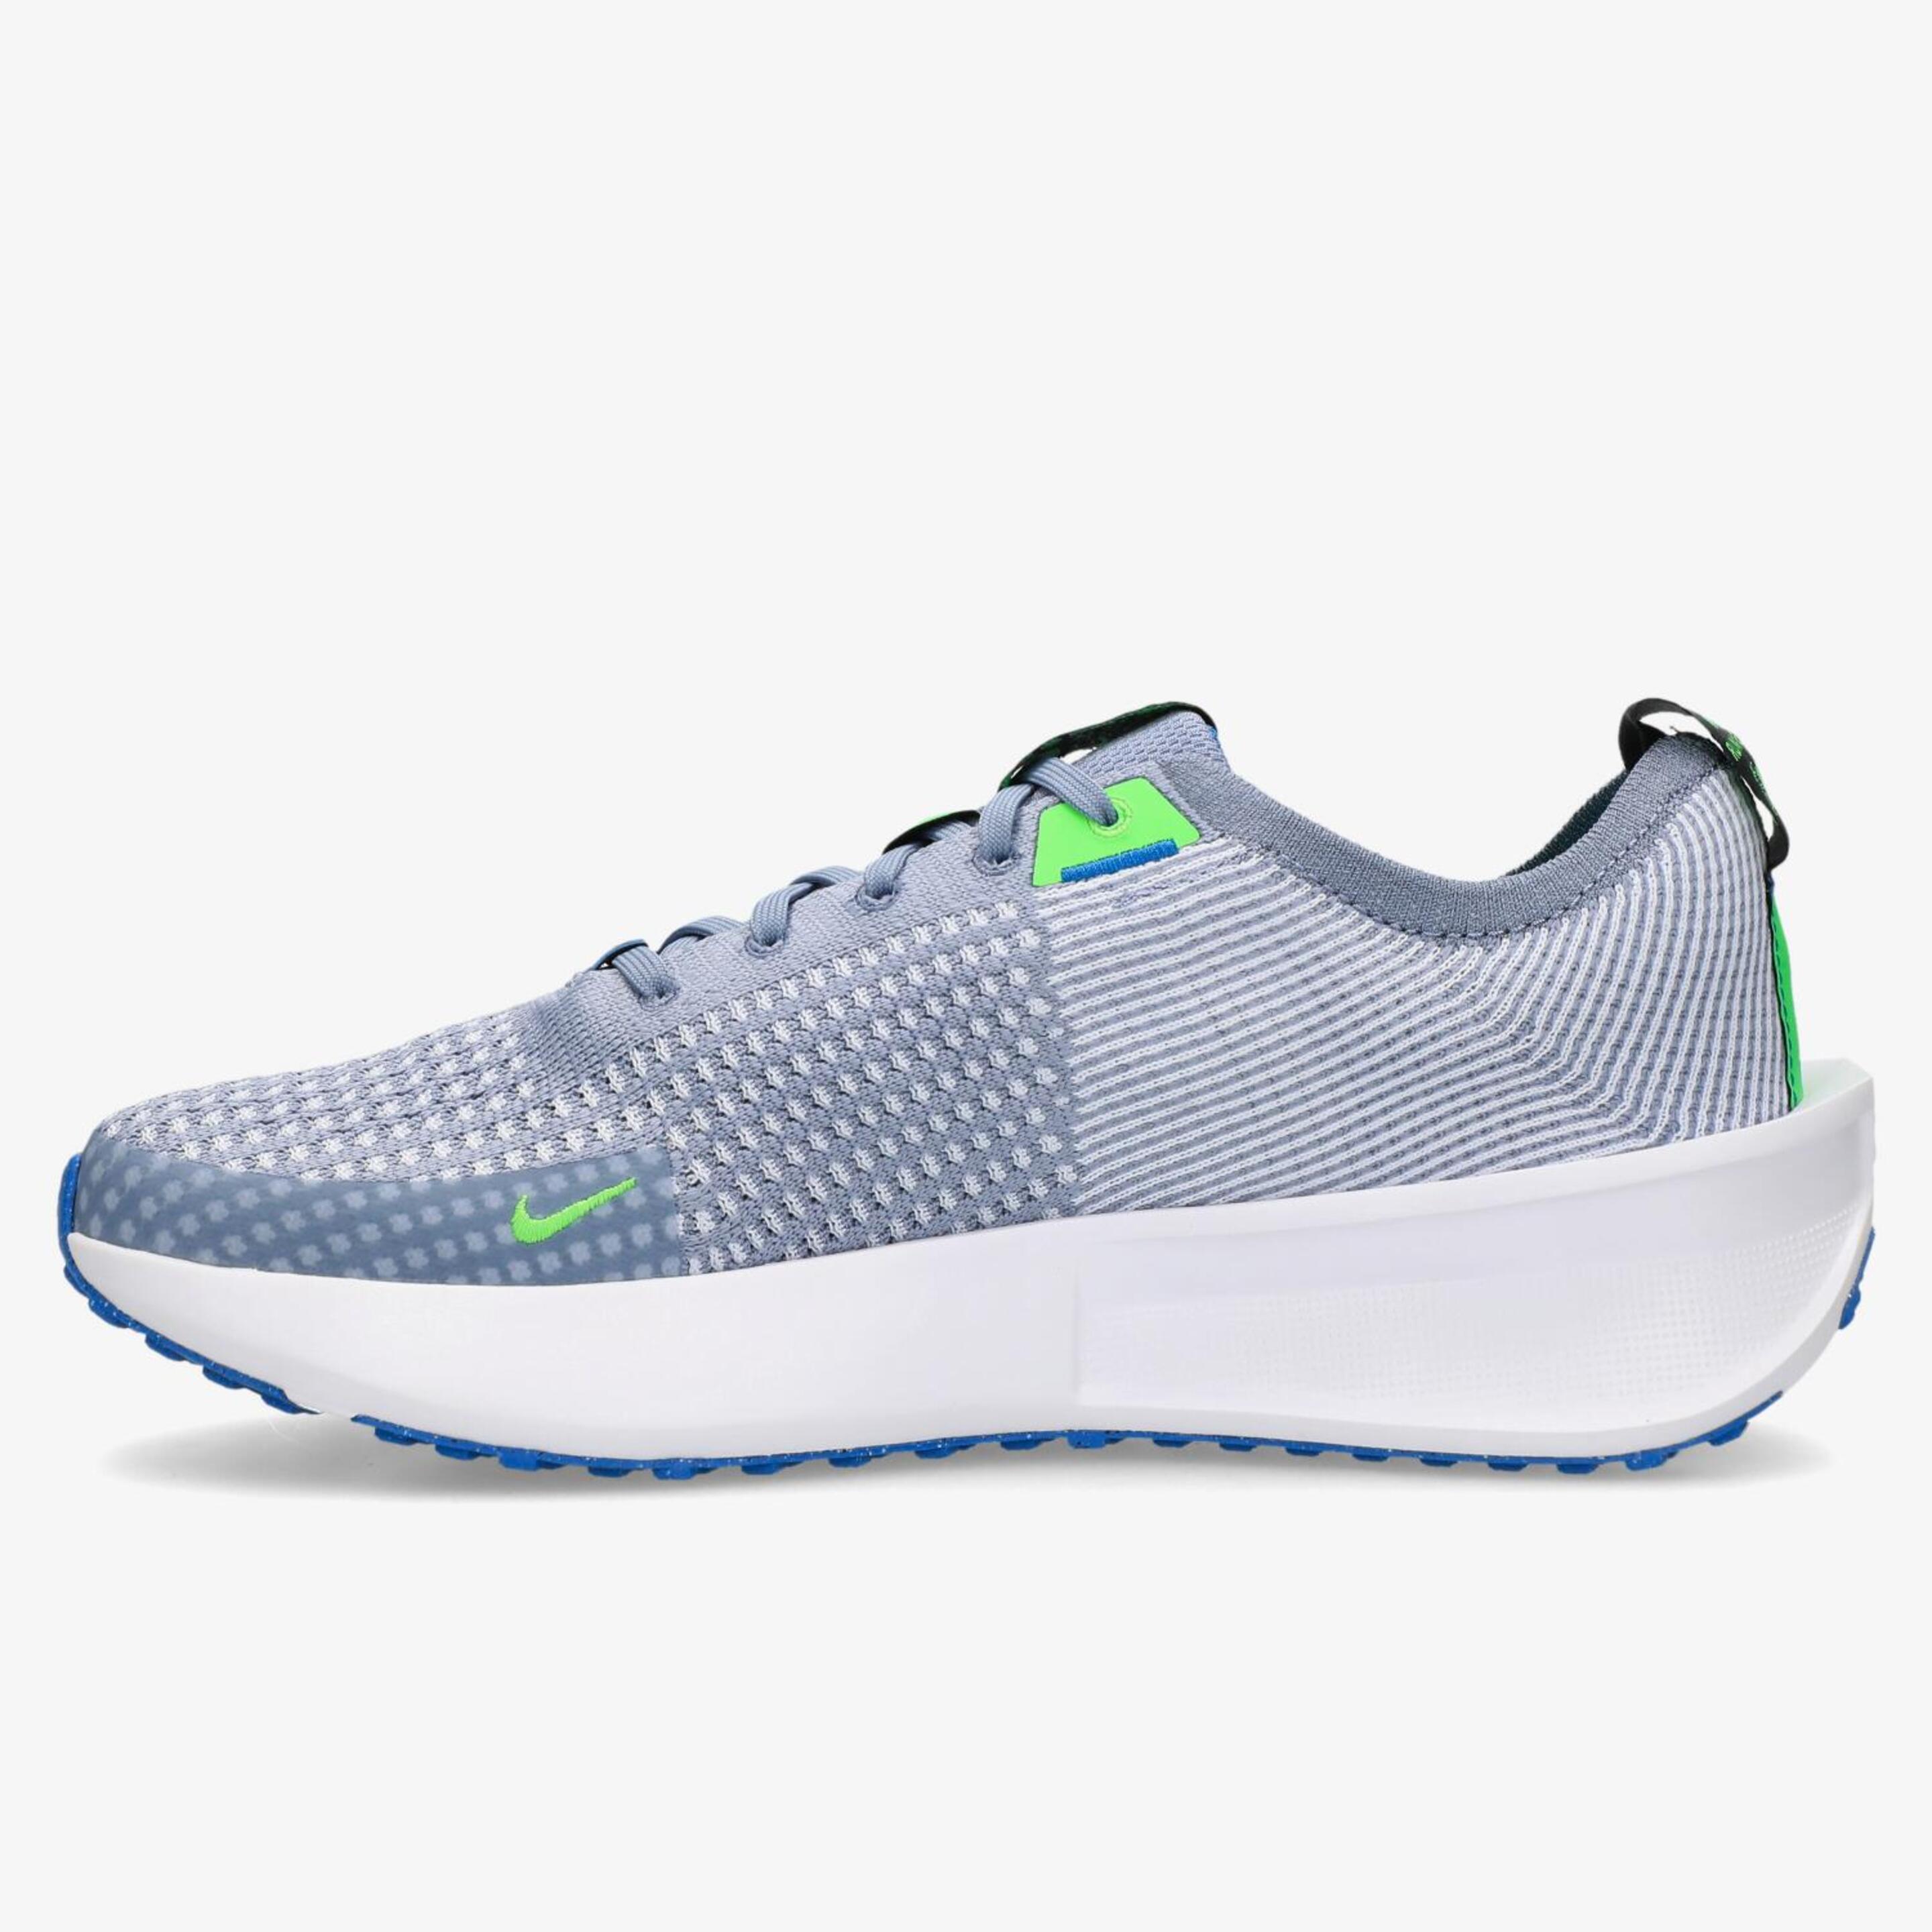 Nike Interact Run - Gris - Zapatillas Running Hombre